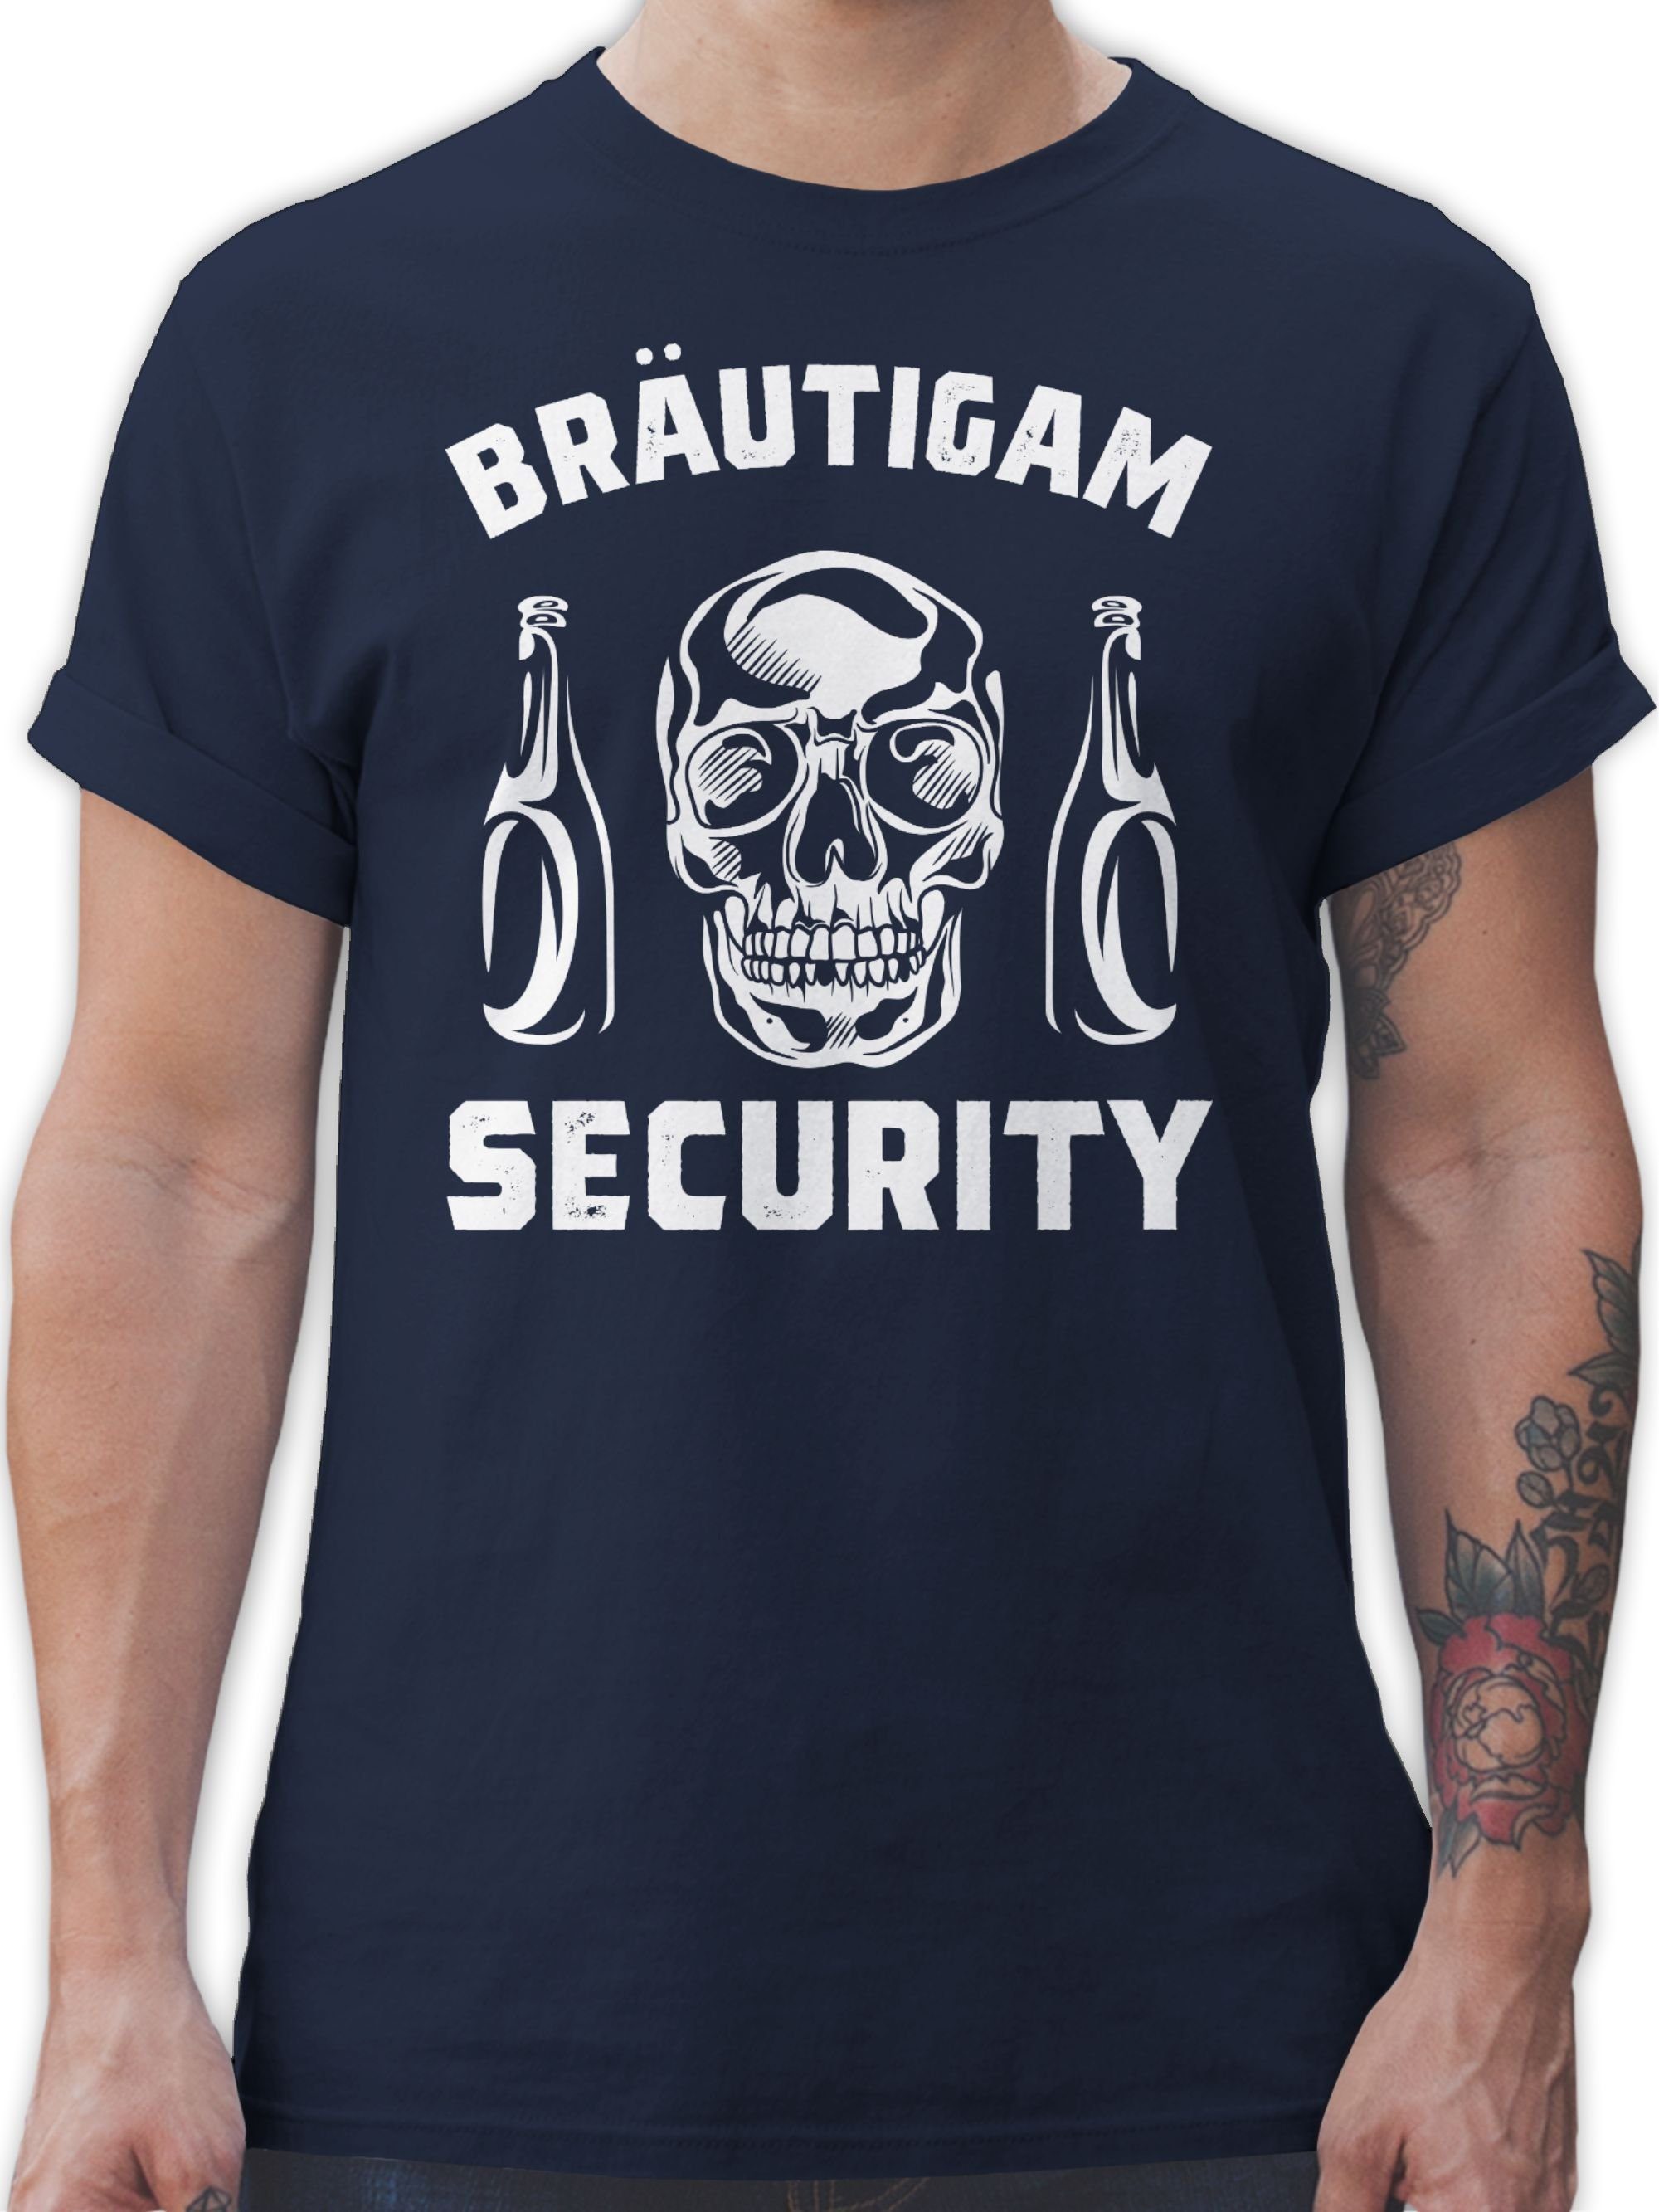 Shirtracer T-Shirt Bräutigam Security Totenkopf JGA Männer 3 Navy Blau